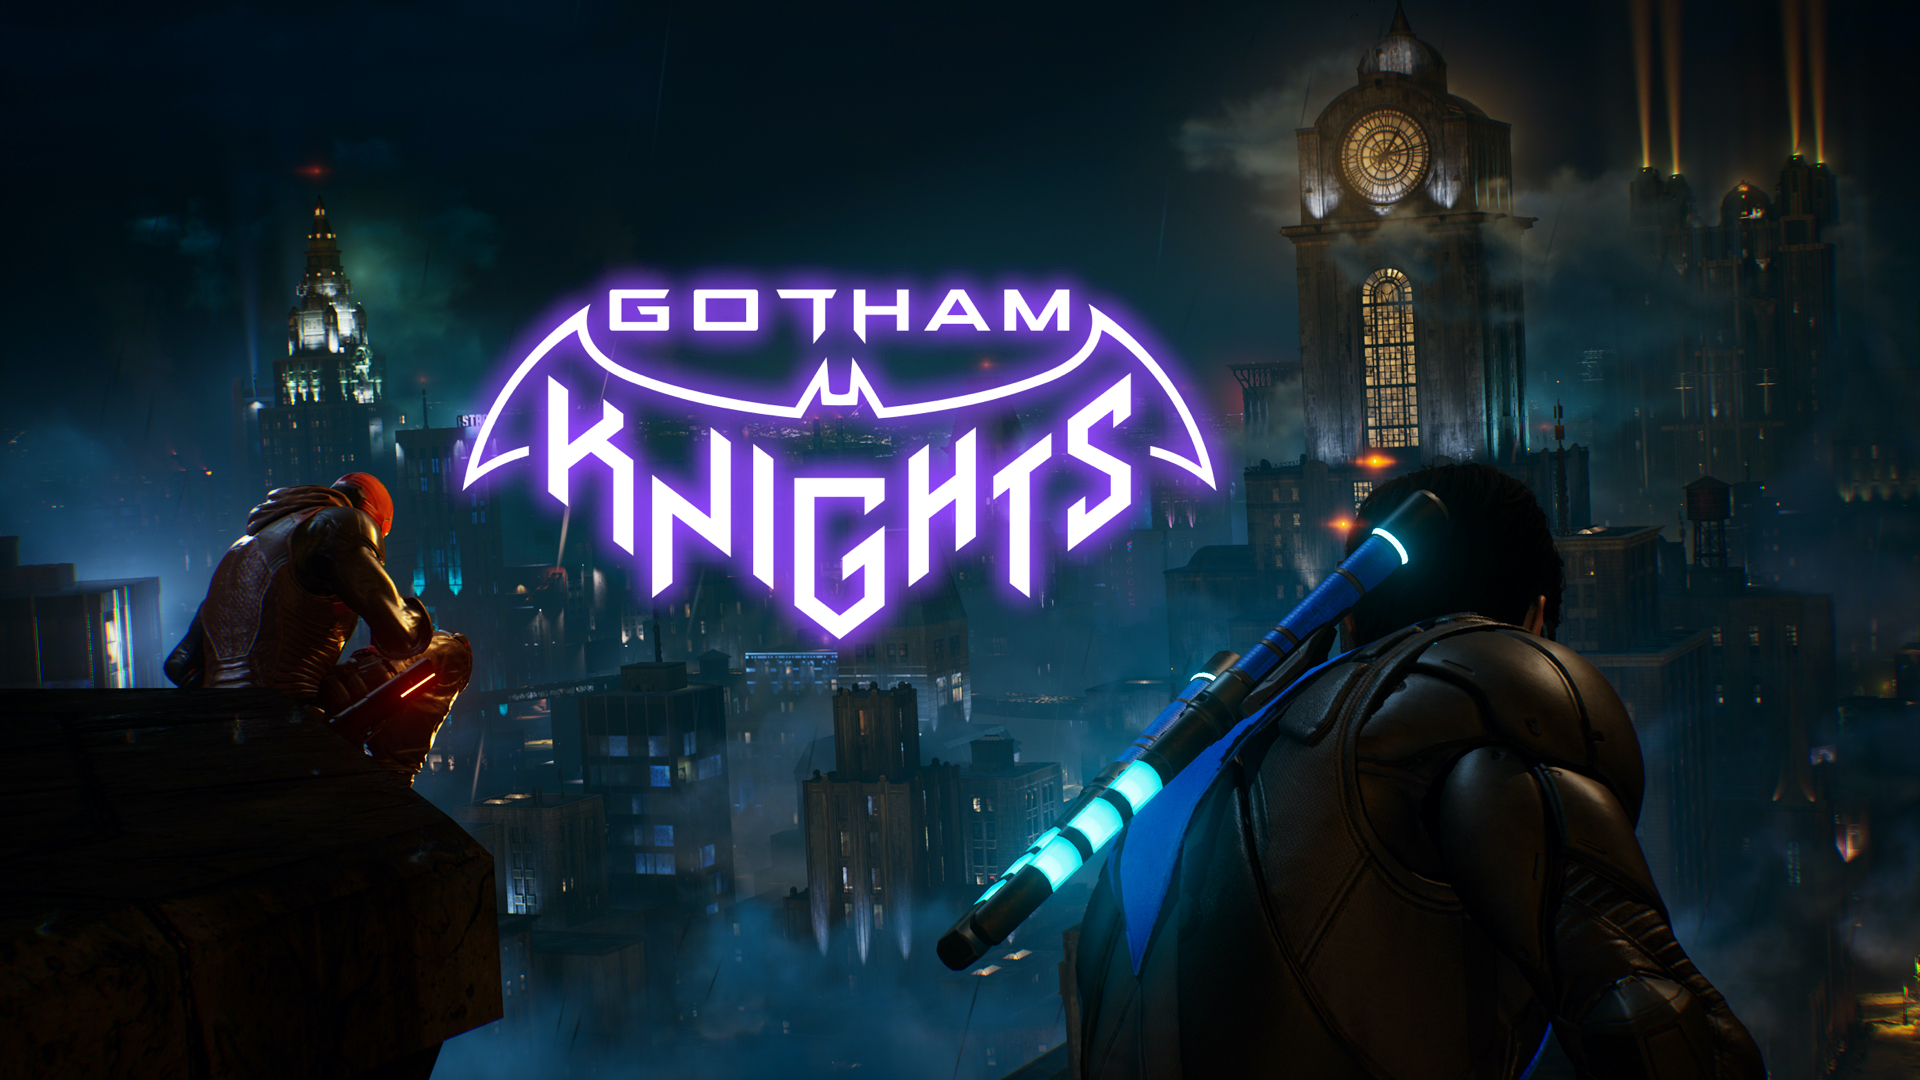 Gotham Knightsは自己完結型のストーリーであり、ライブサービスゲームではないと開発者が語る